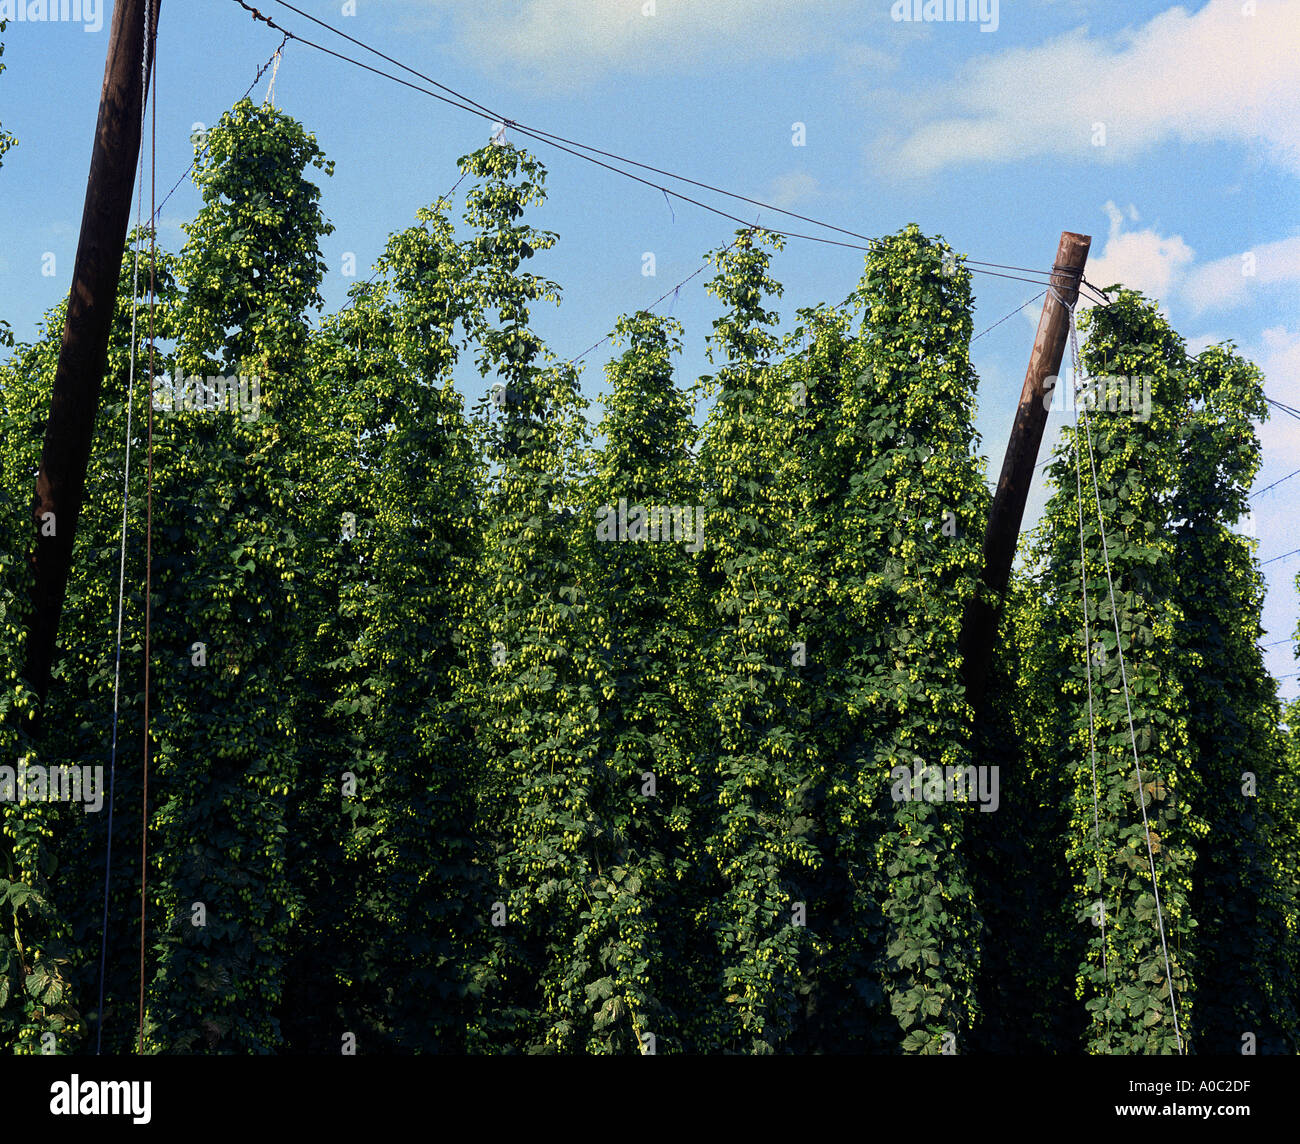 HOP piante erbacee perenni HALLERTAU famosa in tutto il mondo hop area coltivabile Foto Stock